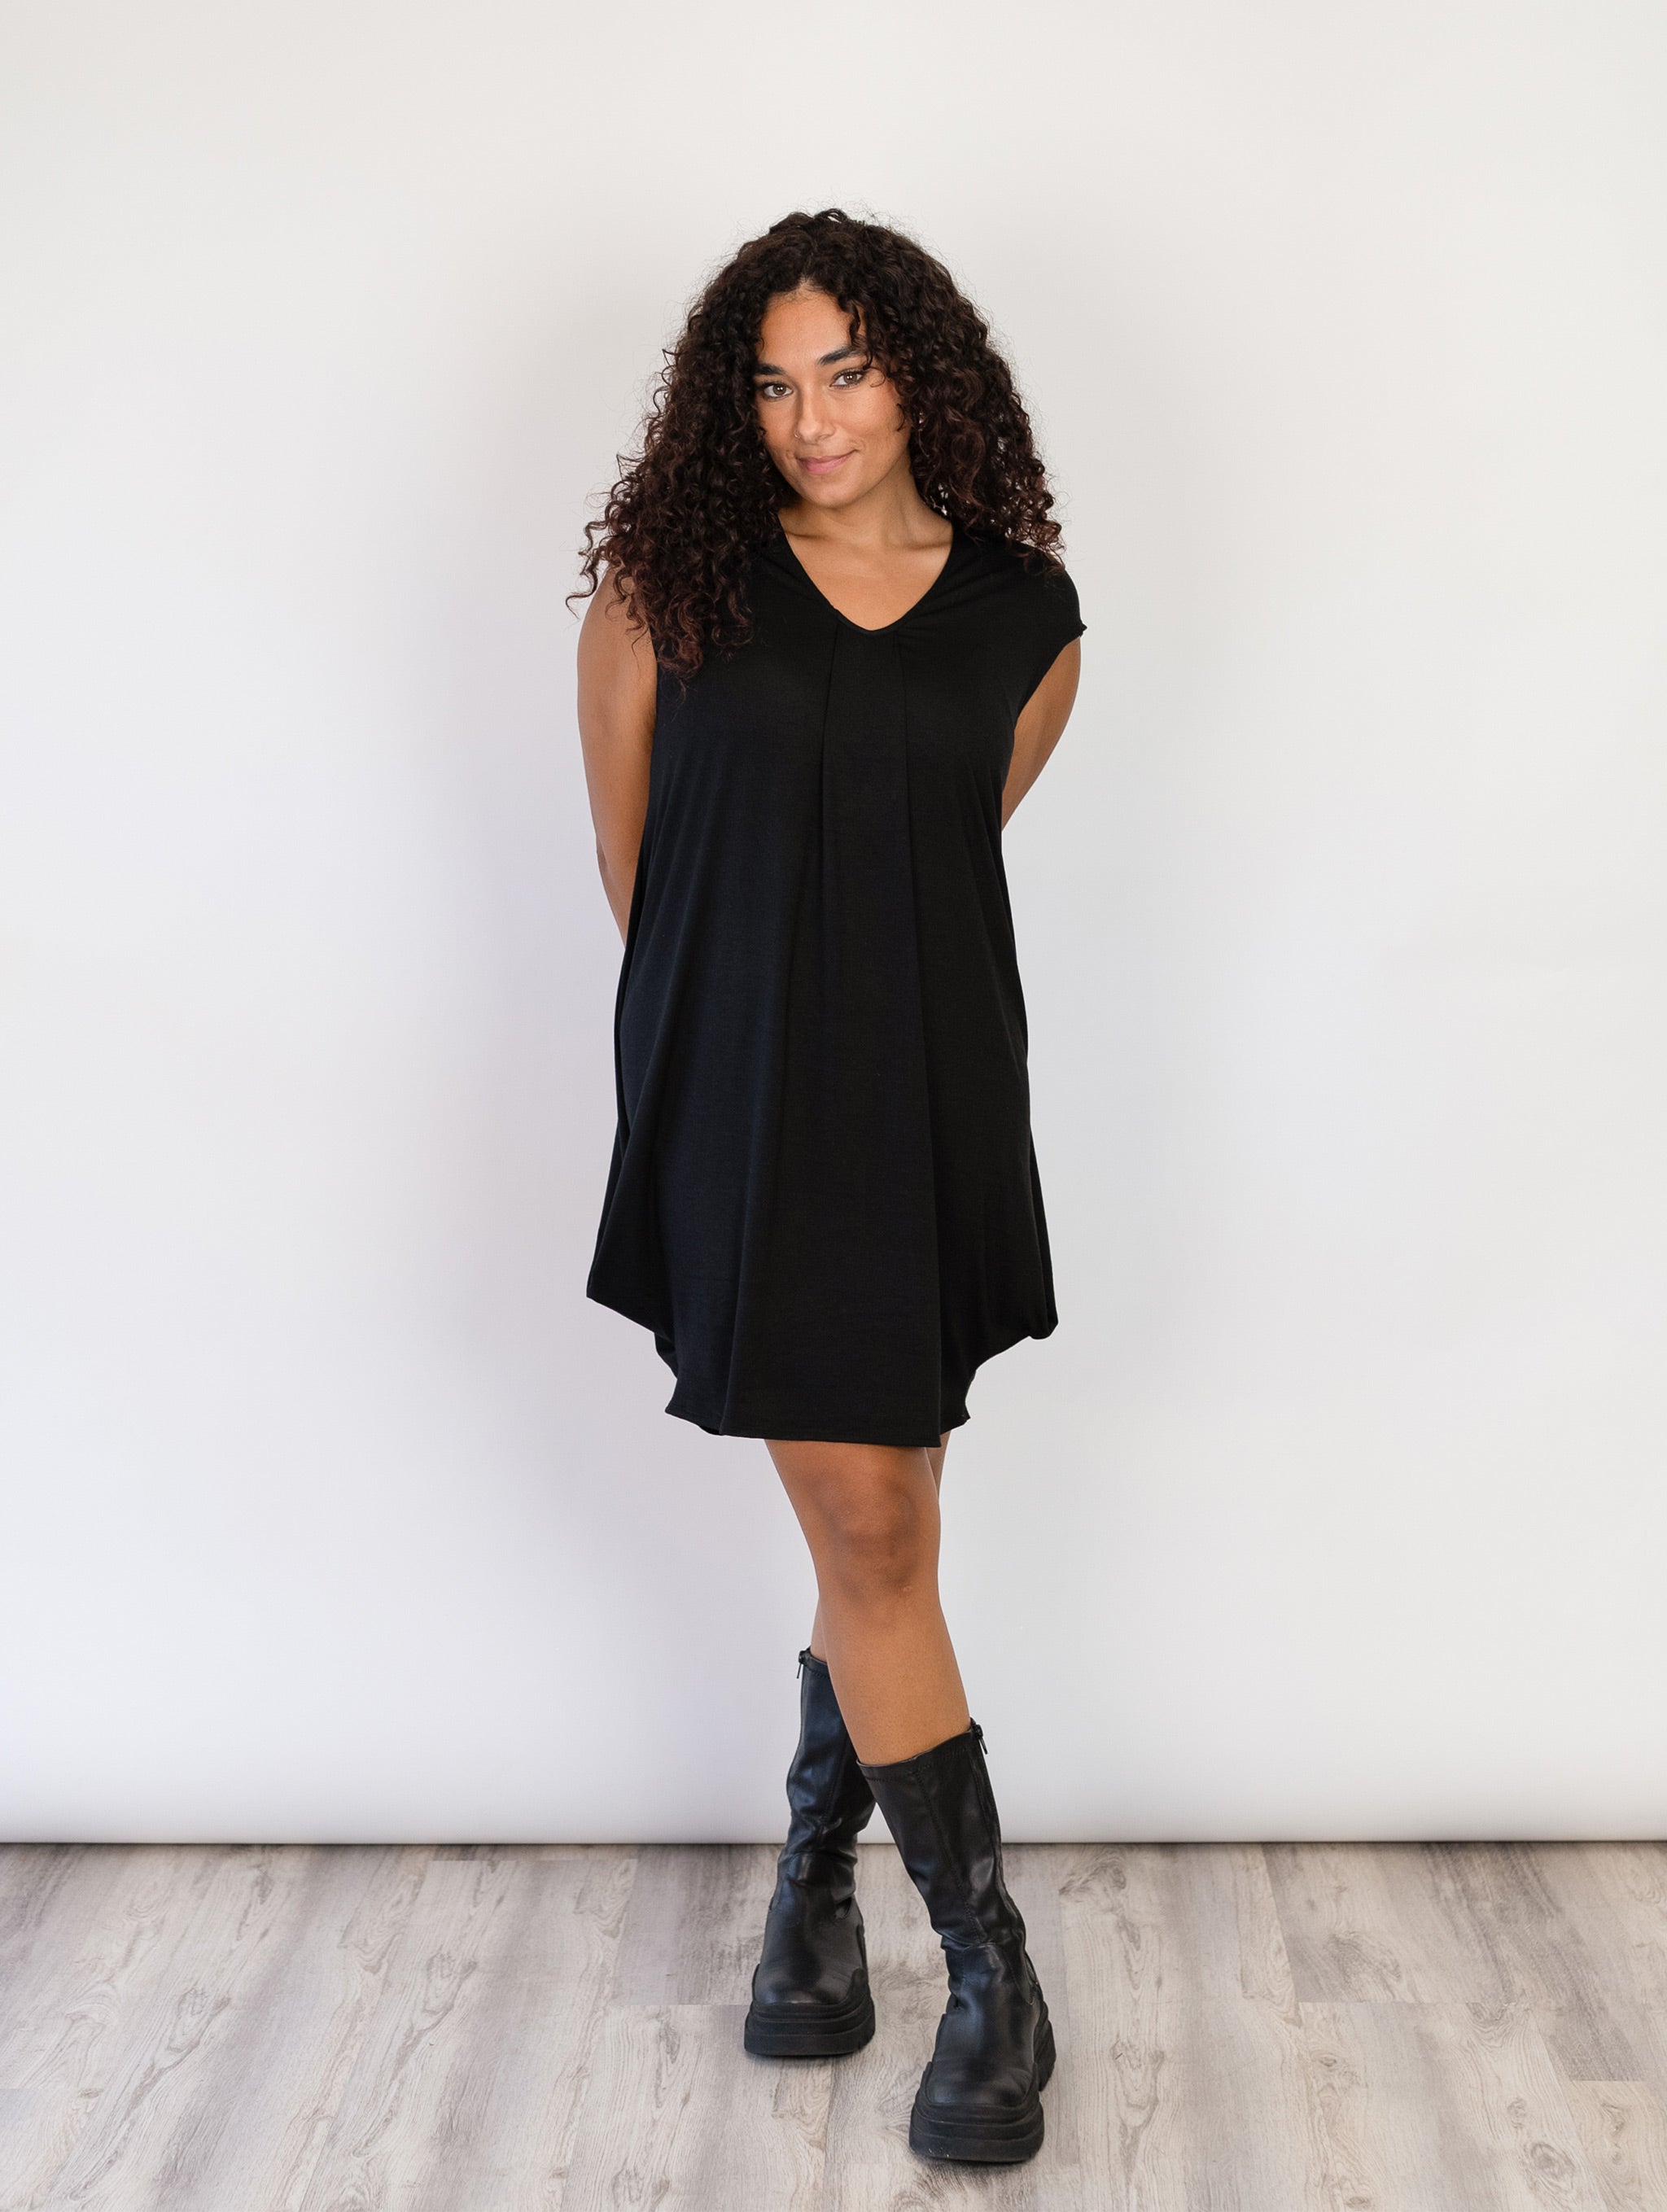 Natasha Dress - Black Rayon Jersey